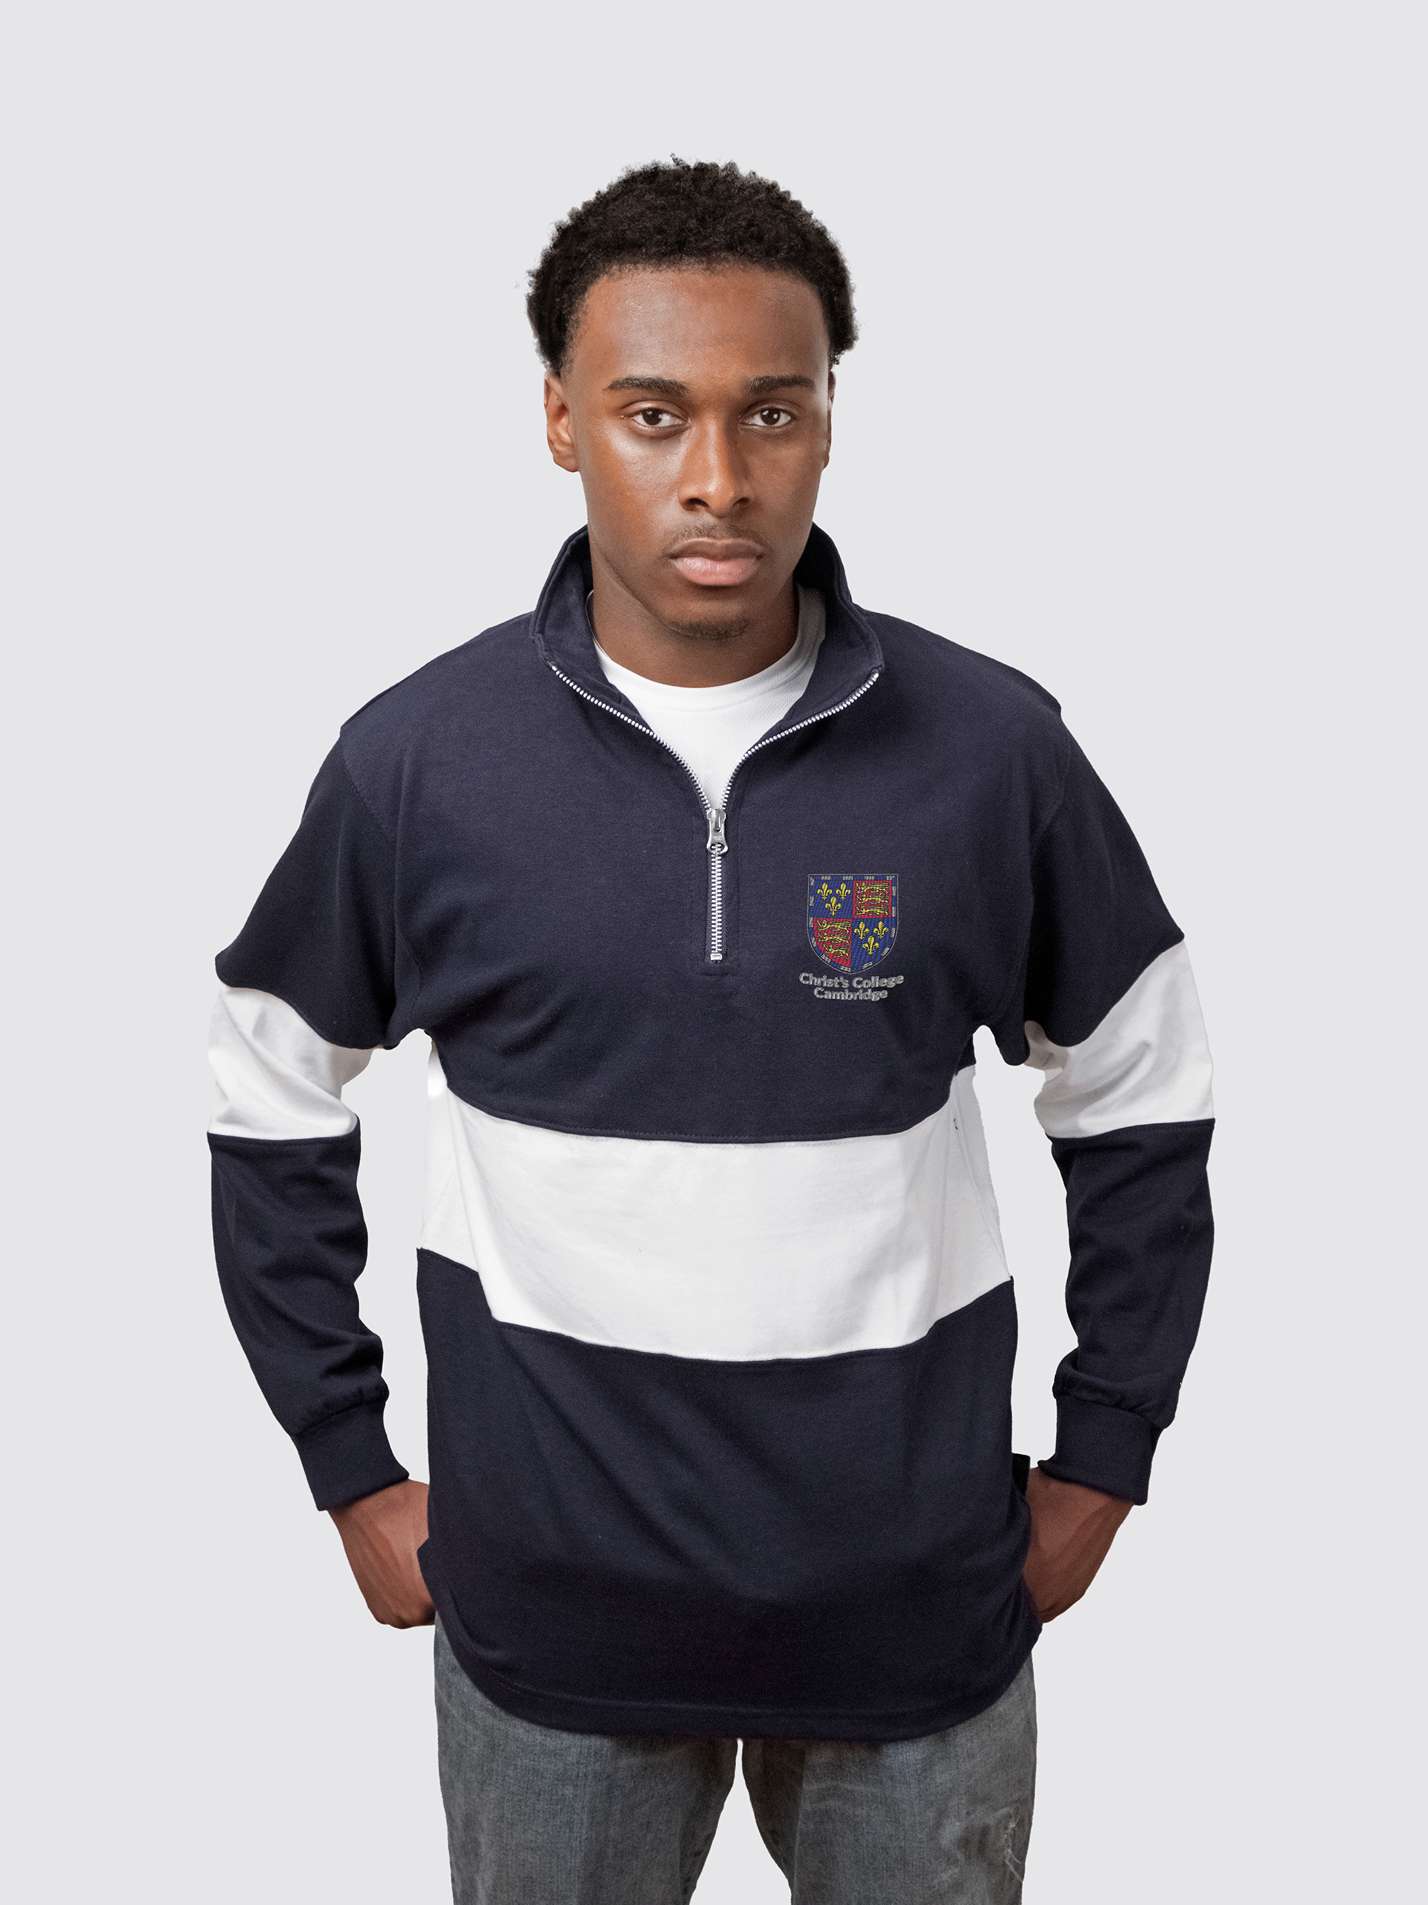 Christ's College Cambridge JCR Unisex Panelled 1/4 Zip Sweatshirt